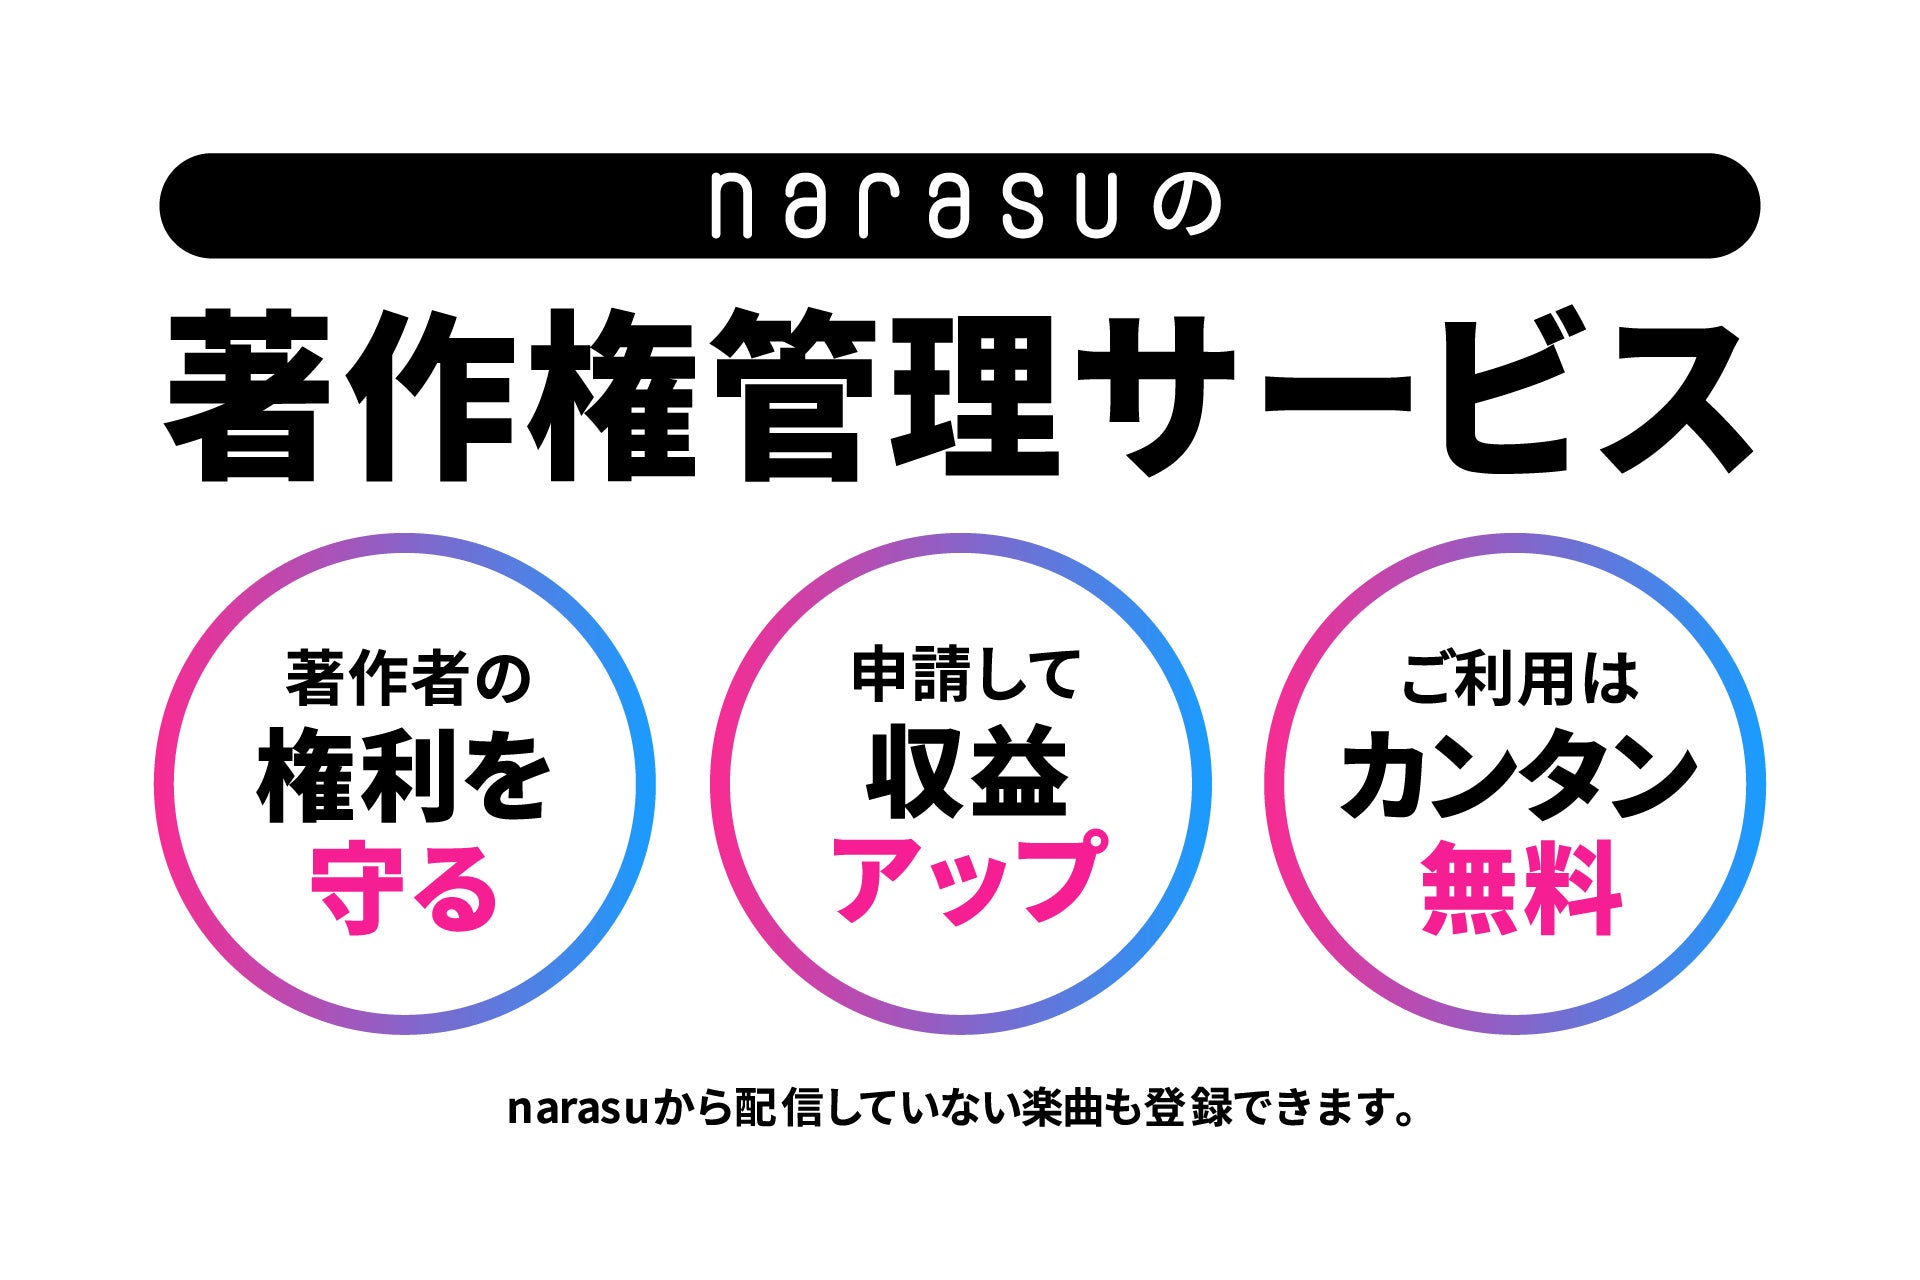 音楽配信代行サービス「narasu」、新機能「著作権管理サービス」を提供開始！！